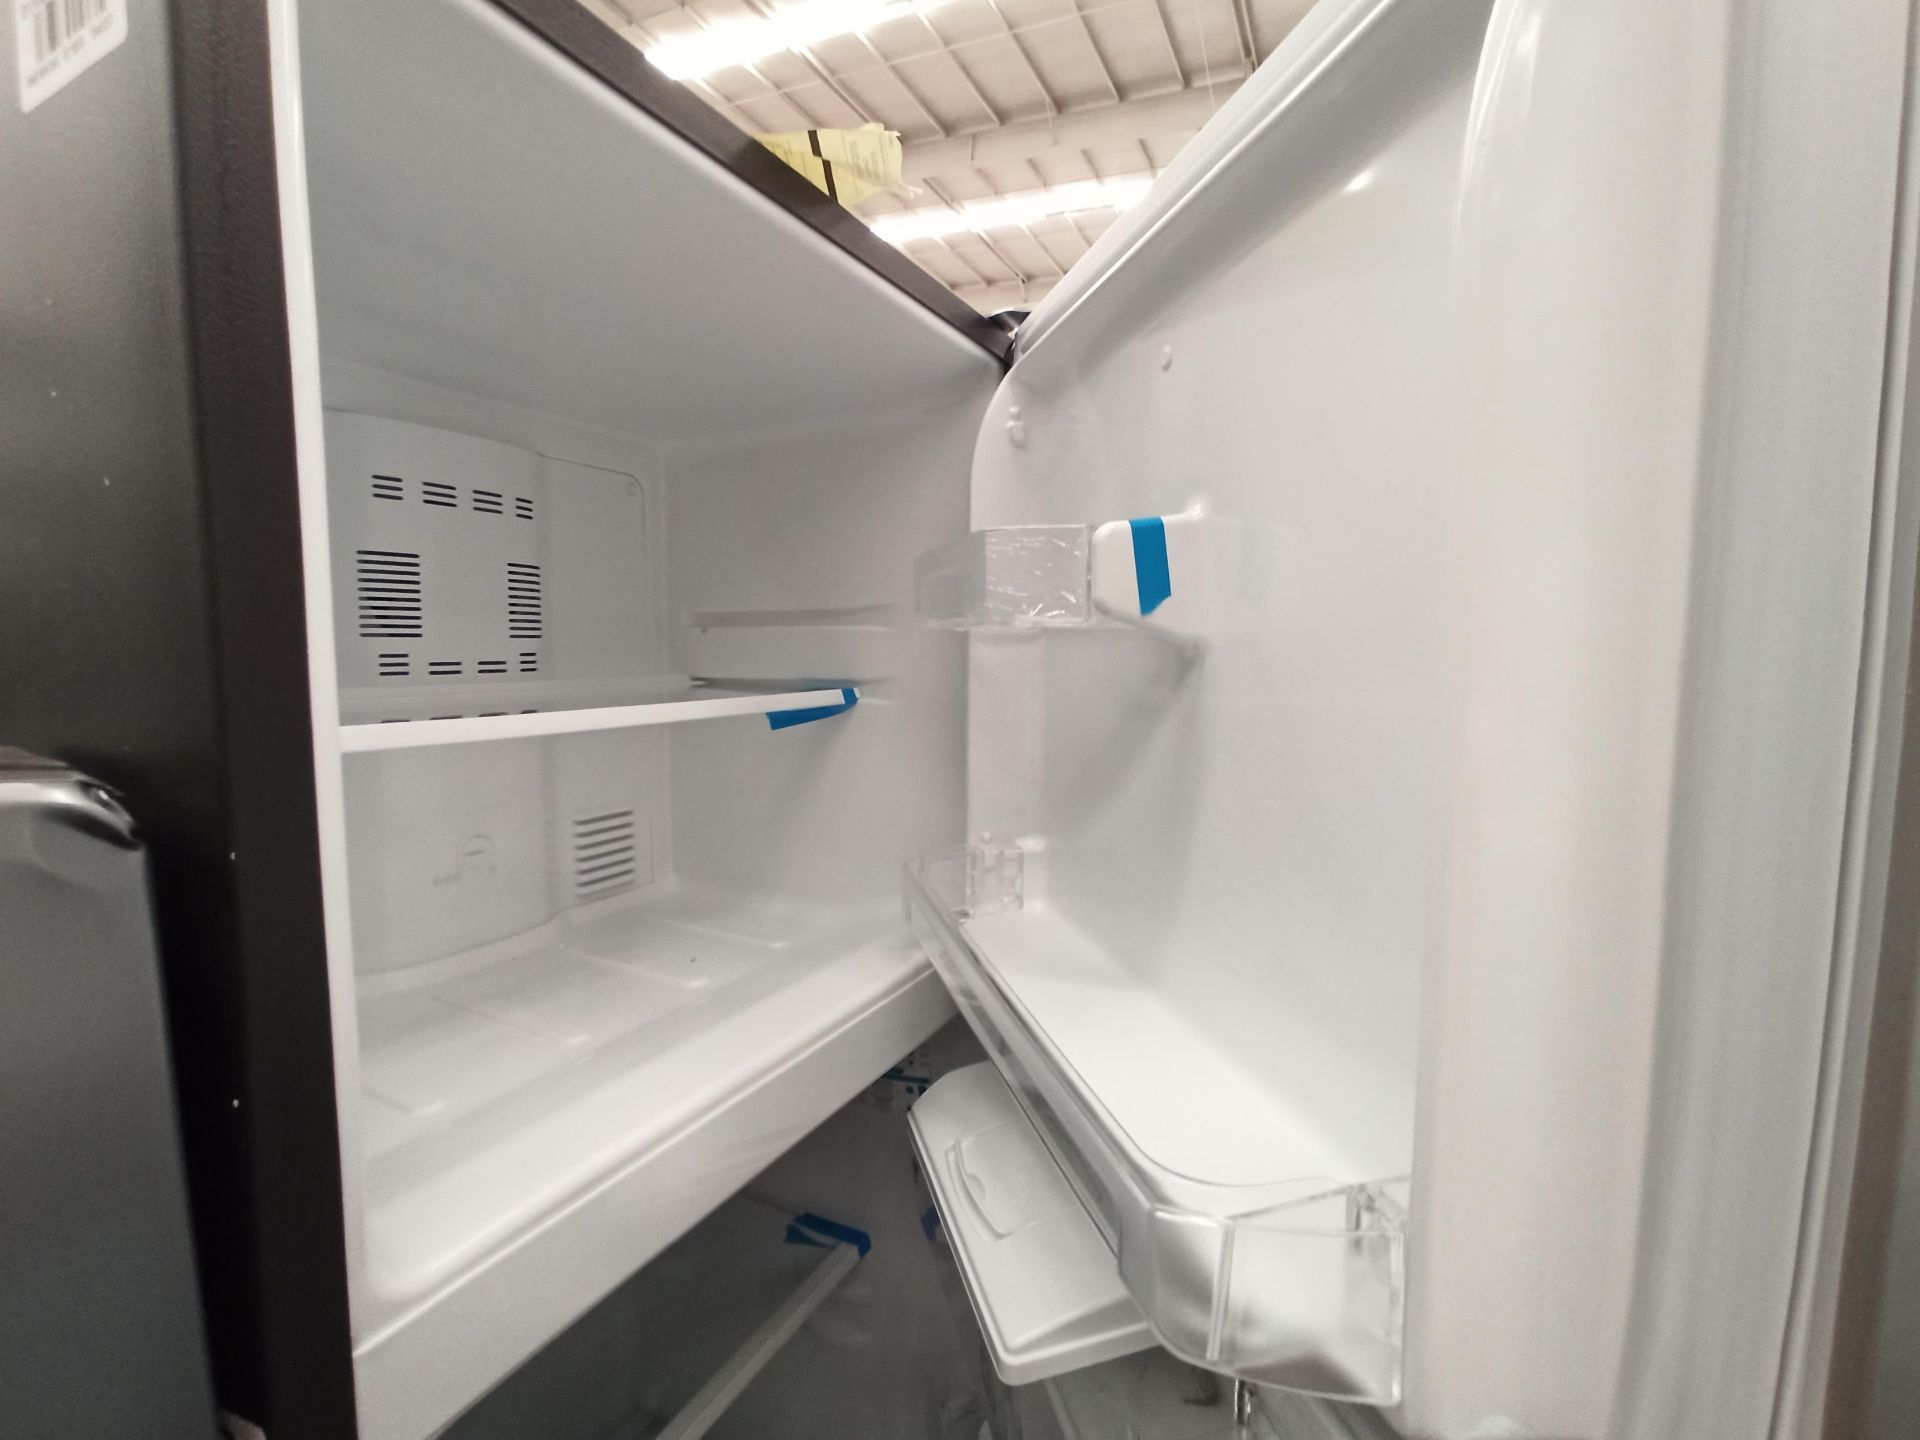 Lote de 2 refrigeradores contiene: 1 Refrigerador con dispensador de agua Marca MABE, Modelo RMA300 - Image 4 of 18